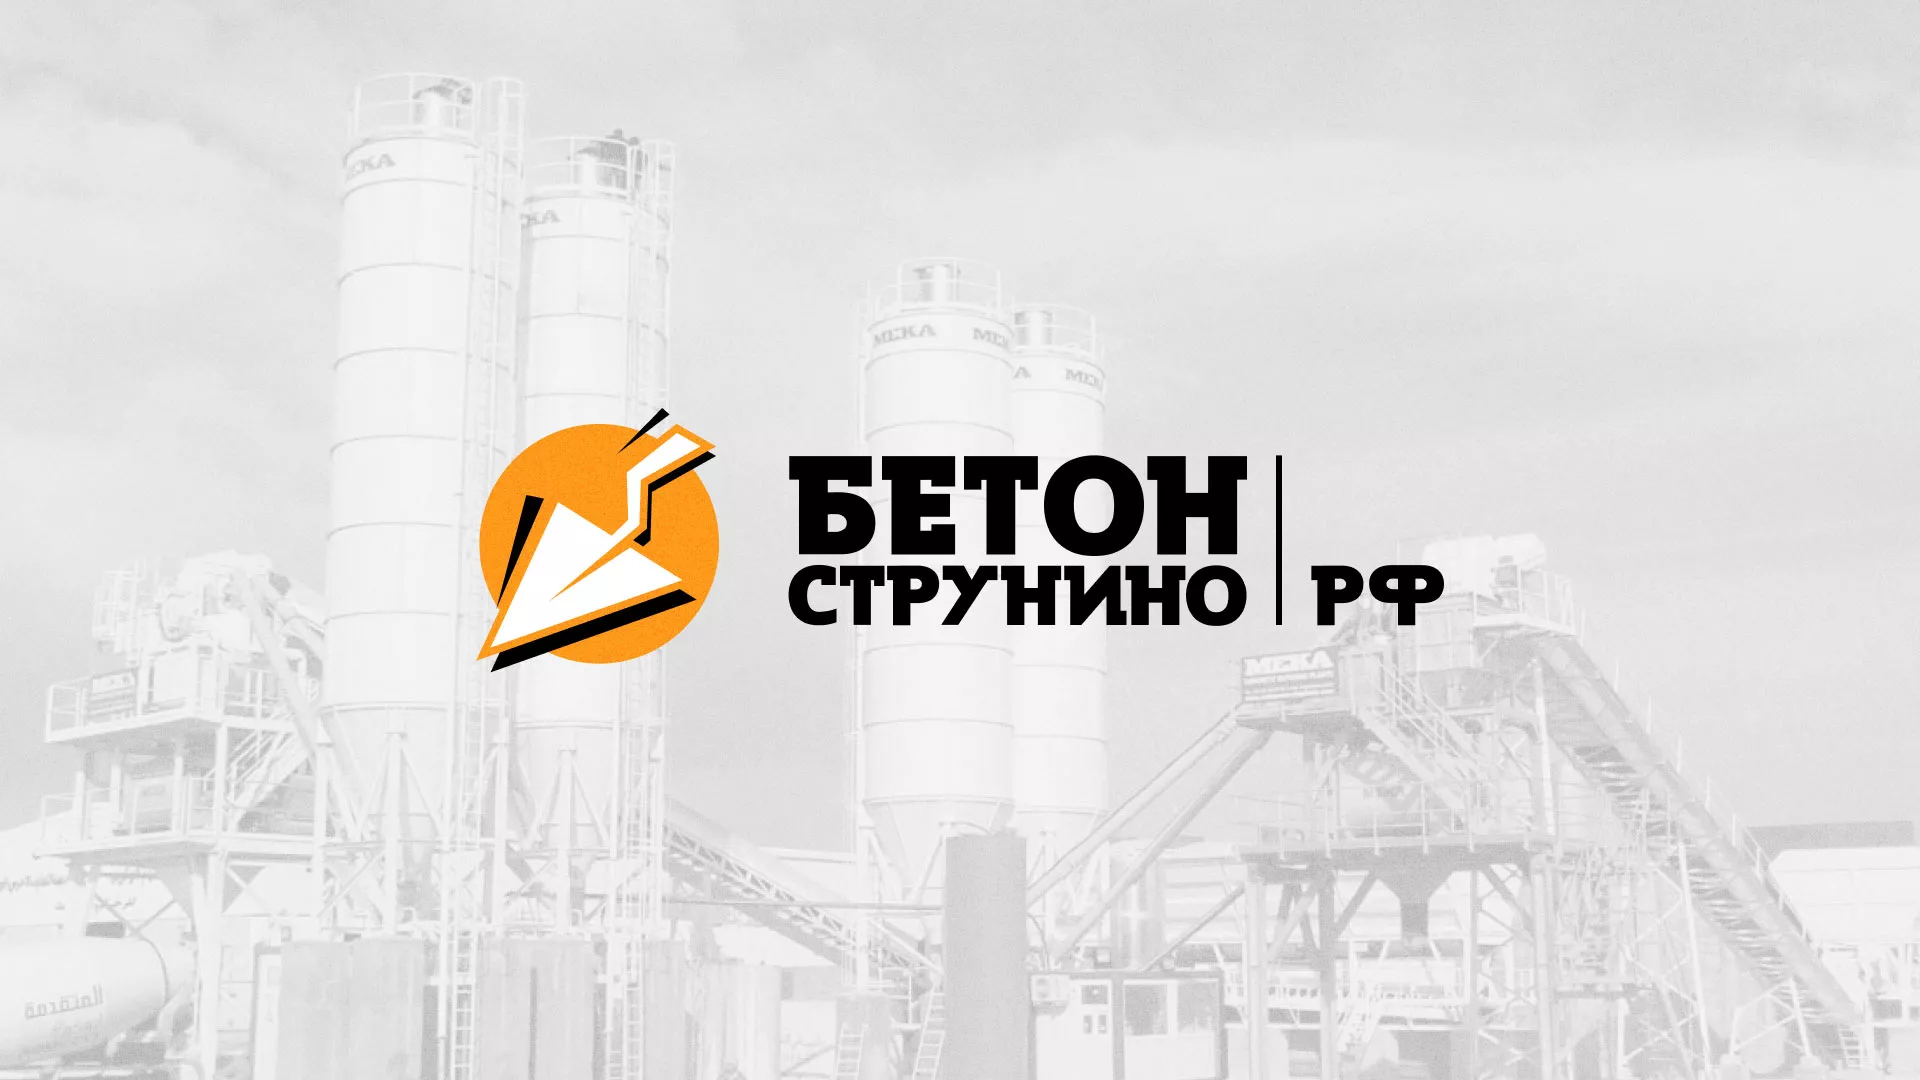 Разработка логотипа для бетонного завода в Шахунье